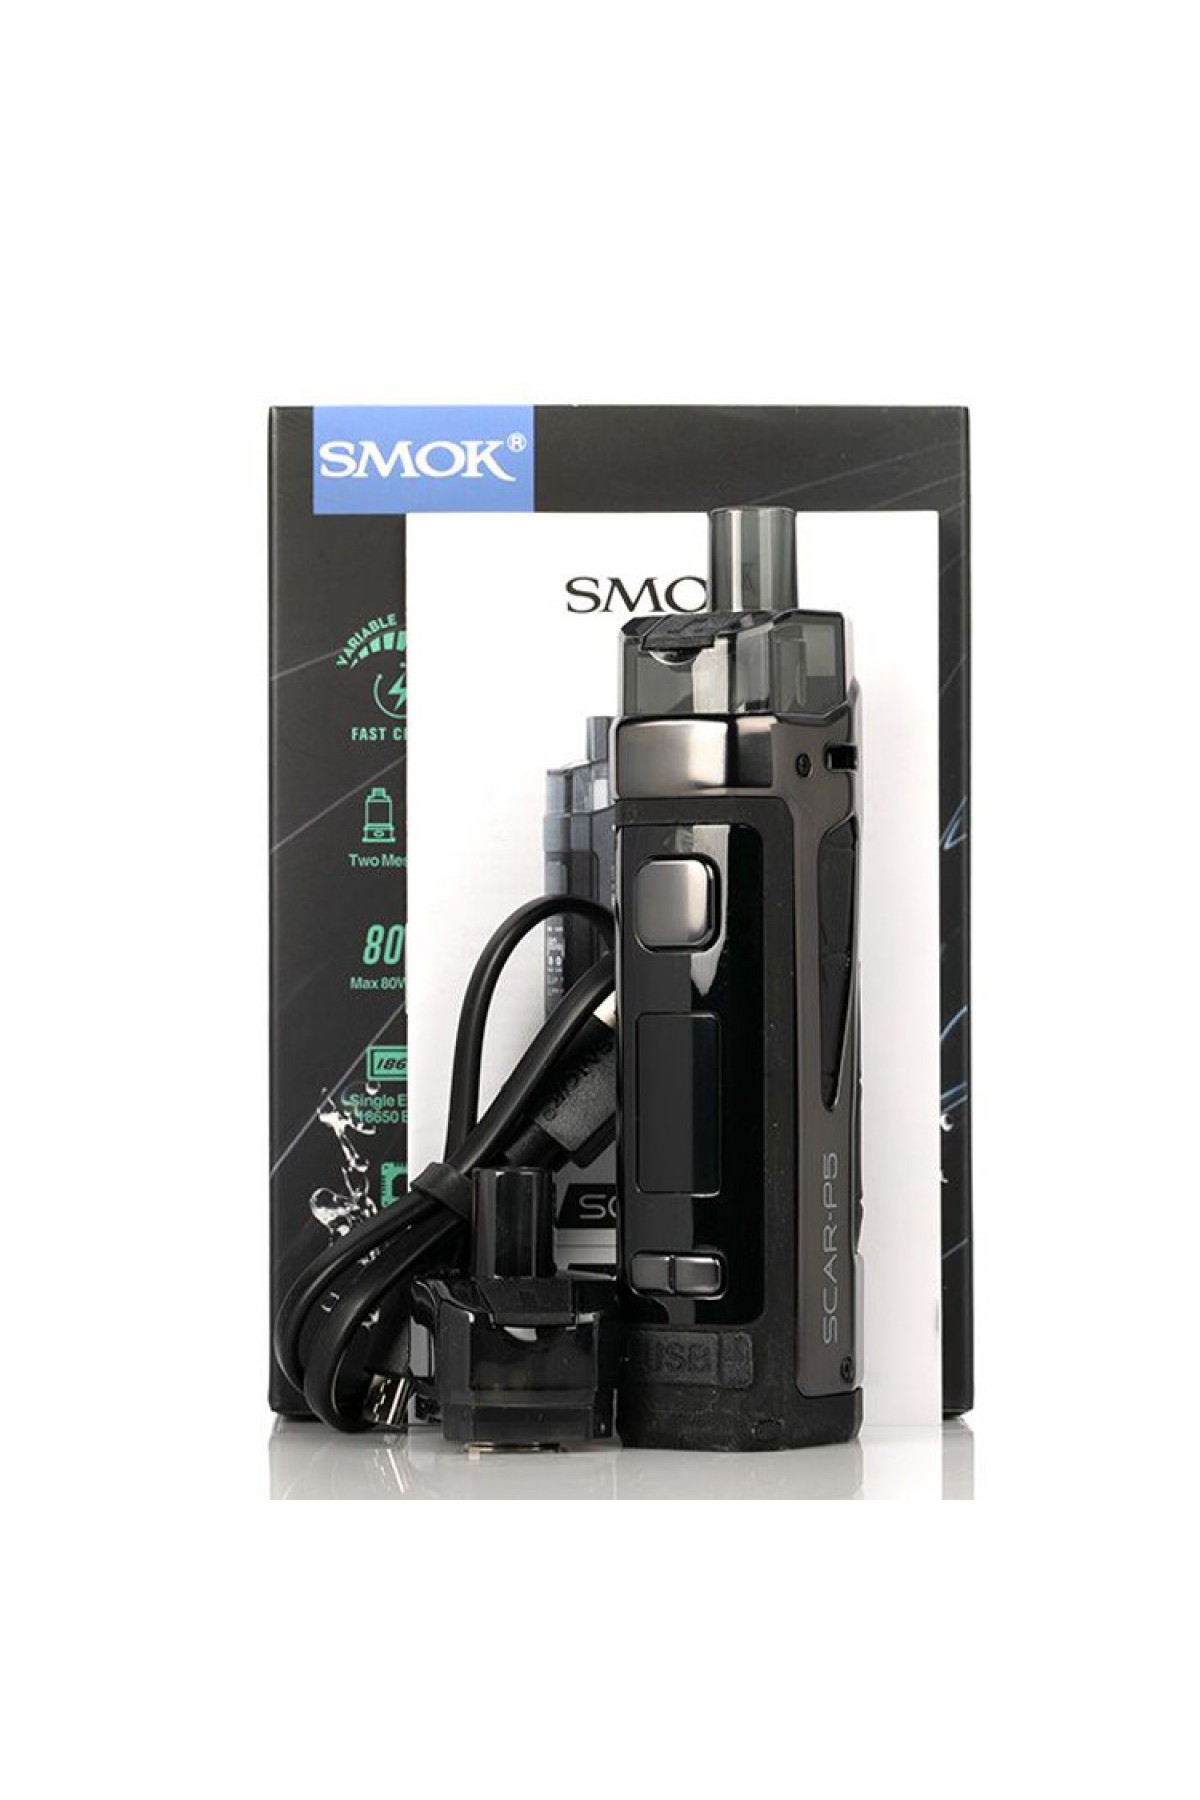 SMOK SCAR-P5 80W POD MOD